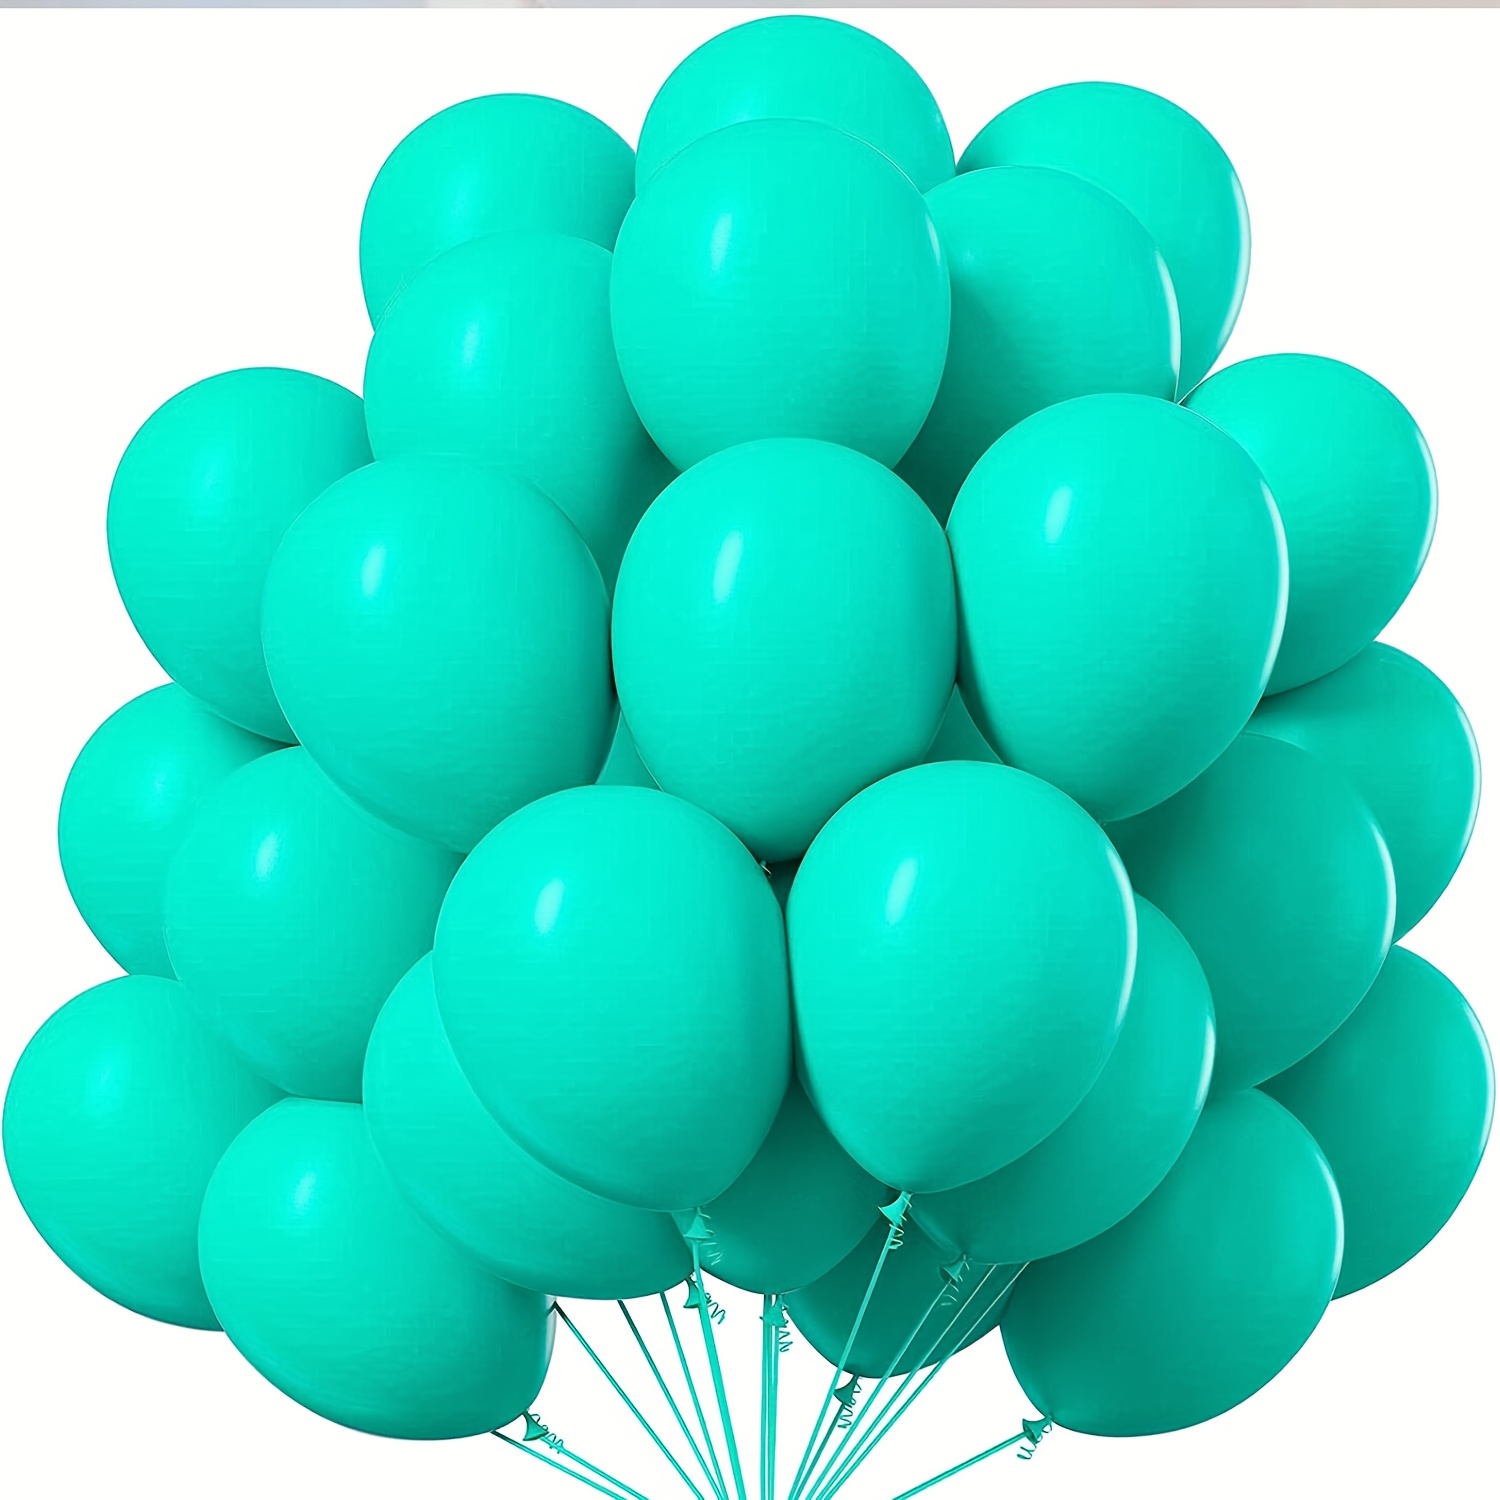 Globos decorativos de cumpleaños número 40, 15 globos turquesa para fiesta  de cumpleaños número 40, suministros para mujeres y hombres de 40 años de